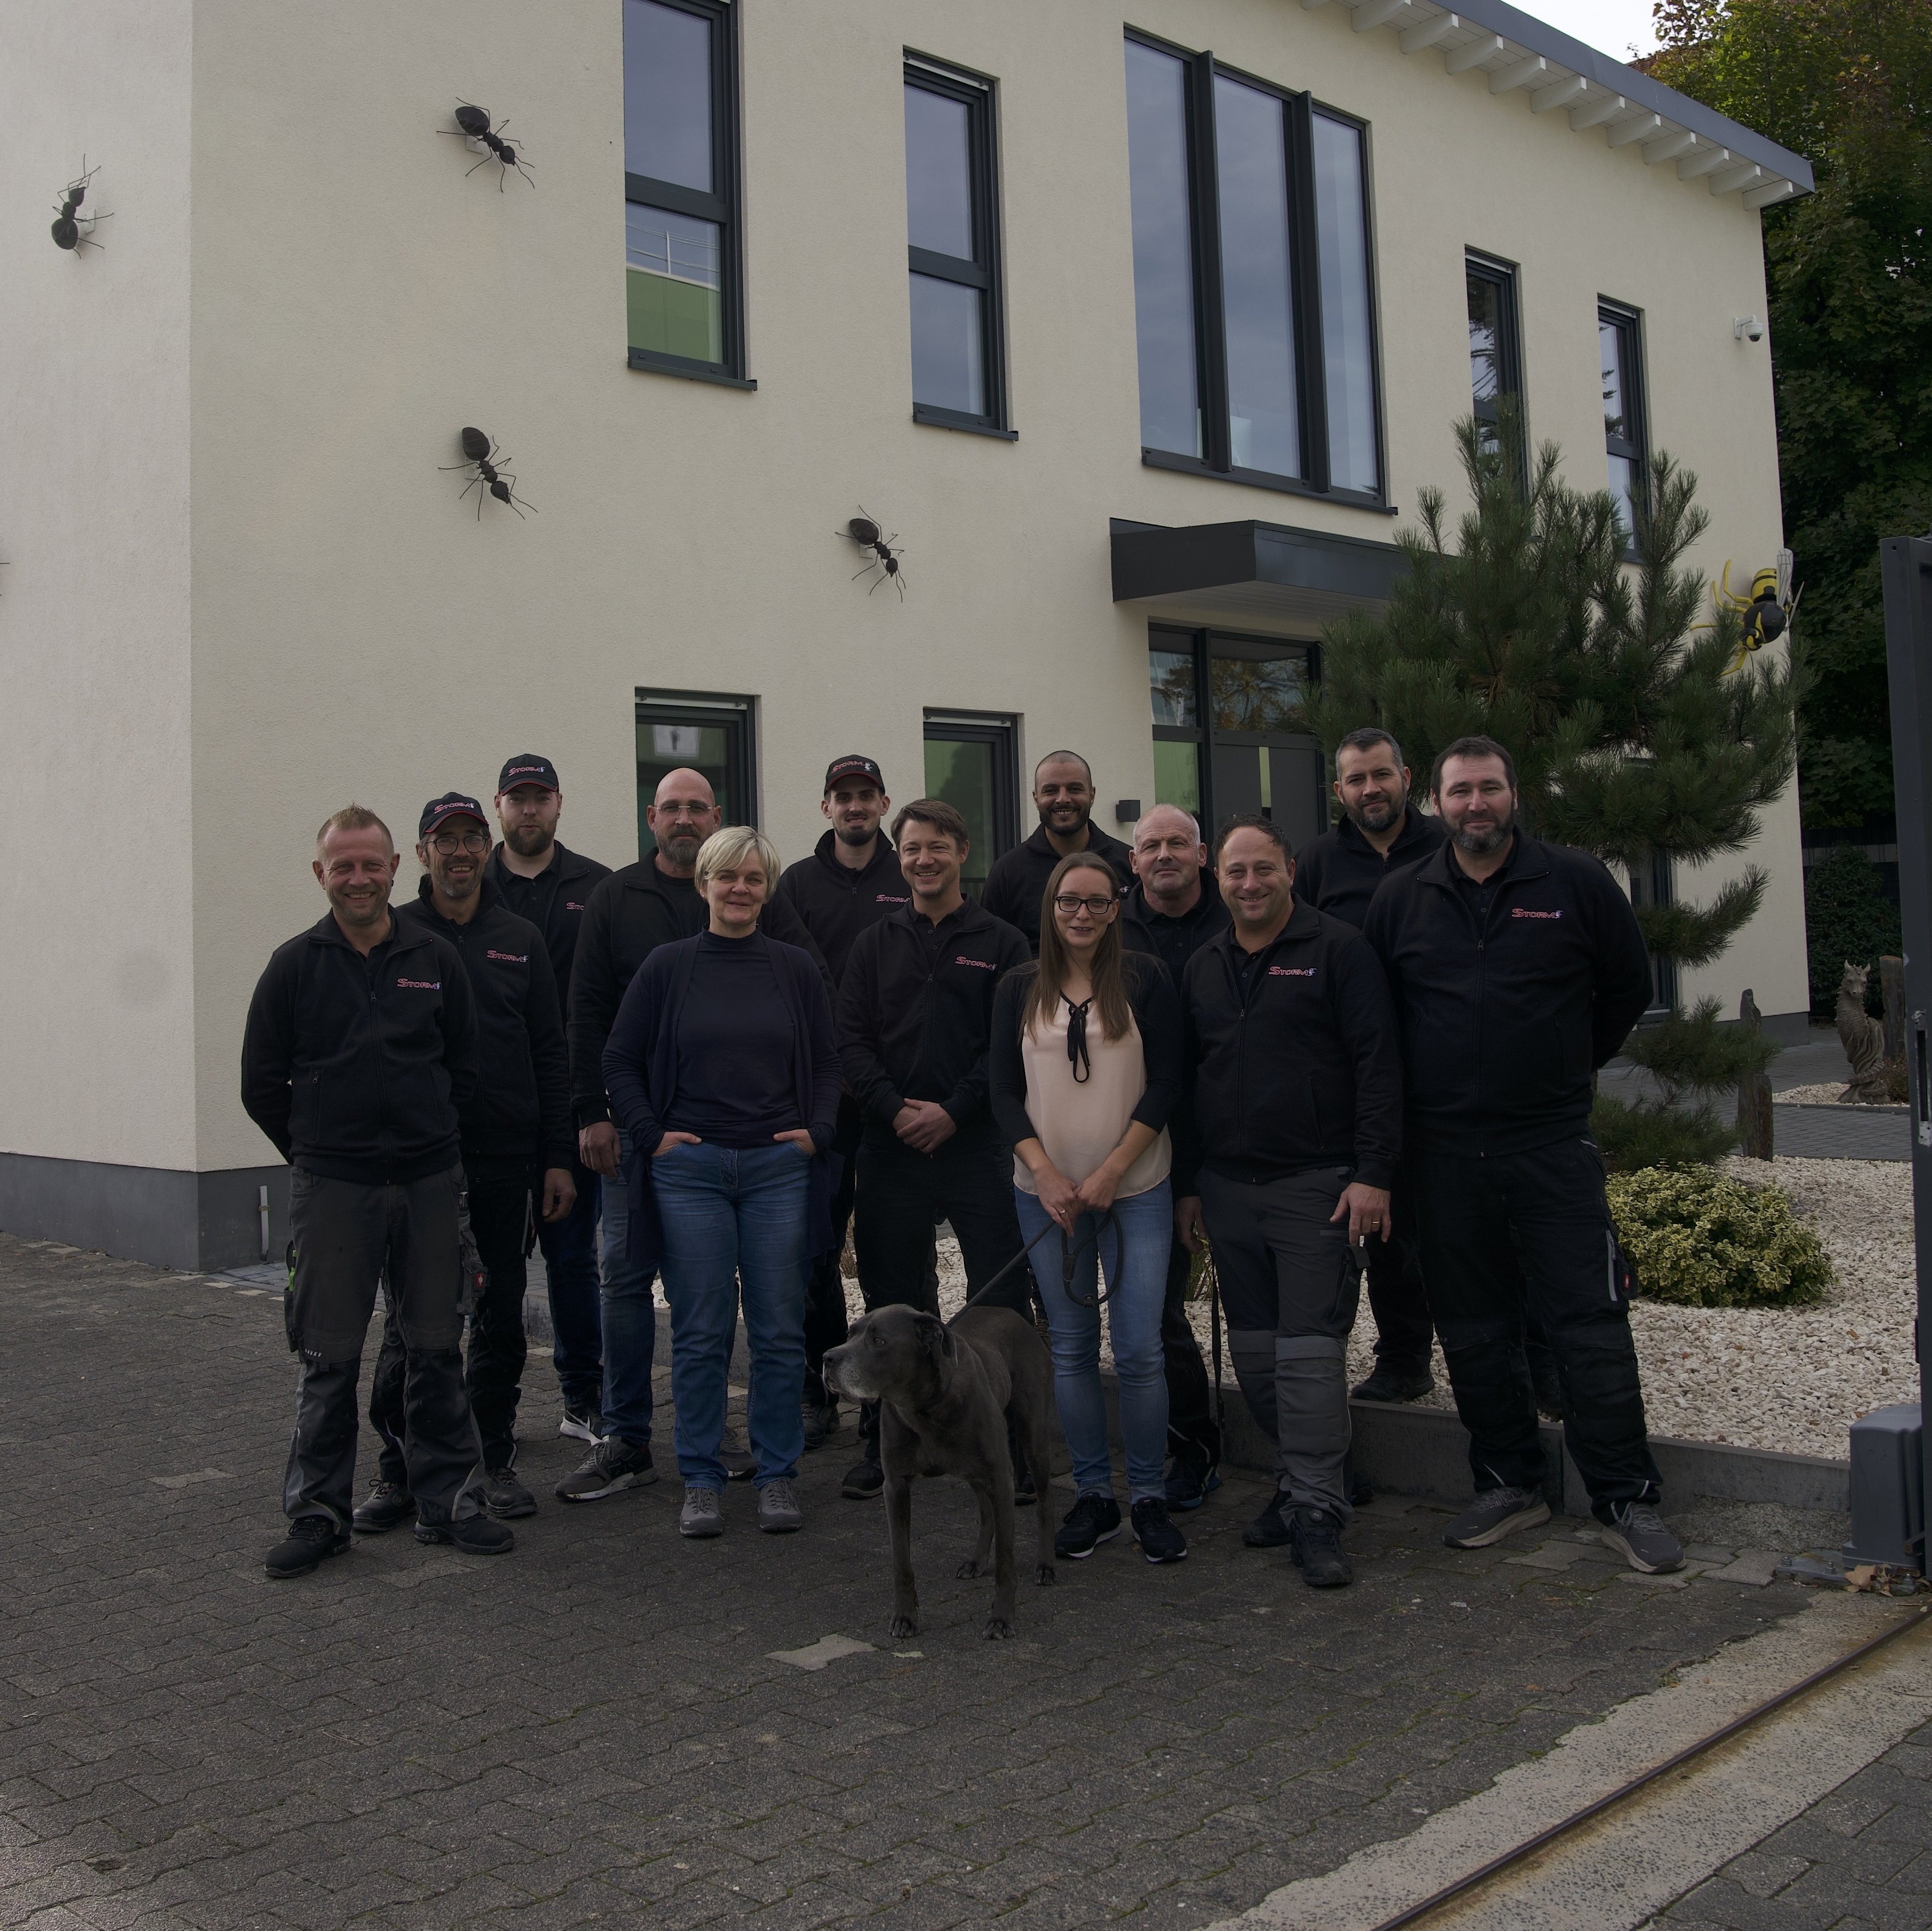 Ein helles, geräumiges Firmengebäude der Storm Schädlingsbekämpfungs GmbH, vor dem ein Team aus engagierten Mitarbeitern, mehrheitlich männlich, in Firmenuniformen posiert.